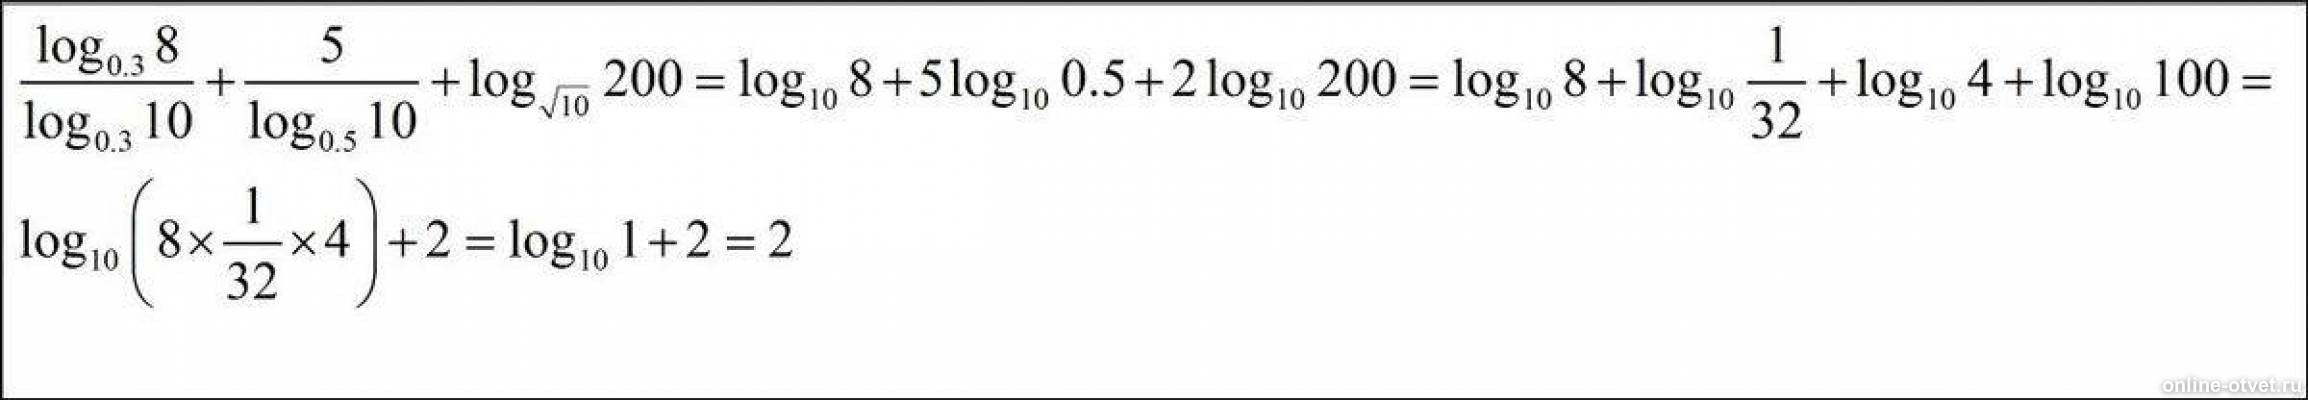 Log5 корень x 2. Лог0,3 10. Log 0 3 10 log - log 0,3 3. Log0.3 8/log0.3 10. 2 Log10 200 2 log10 2.